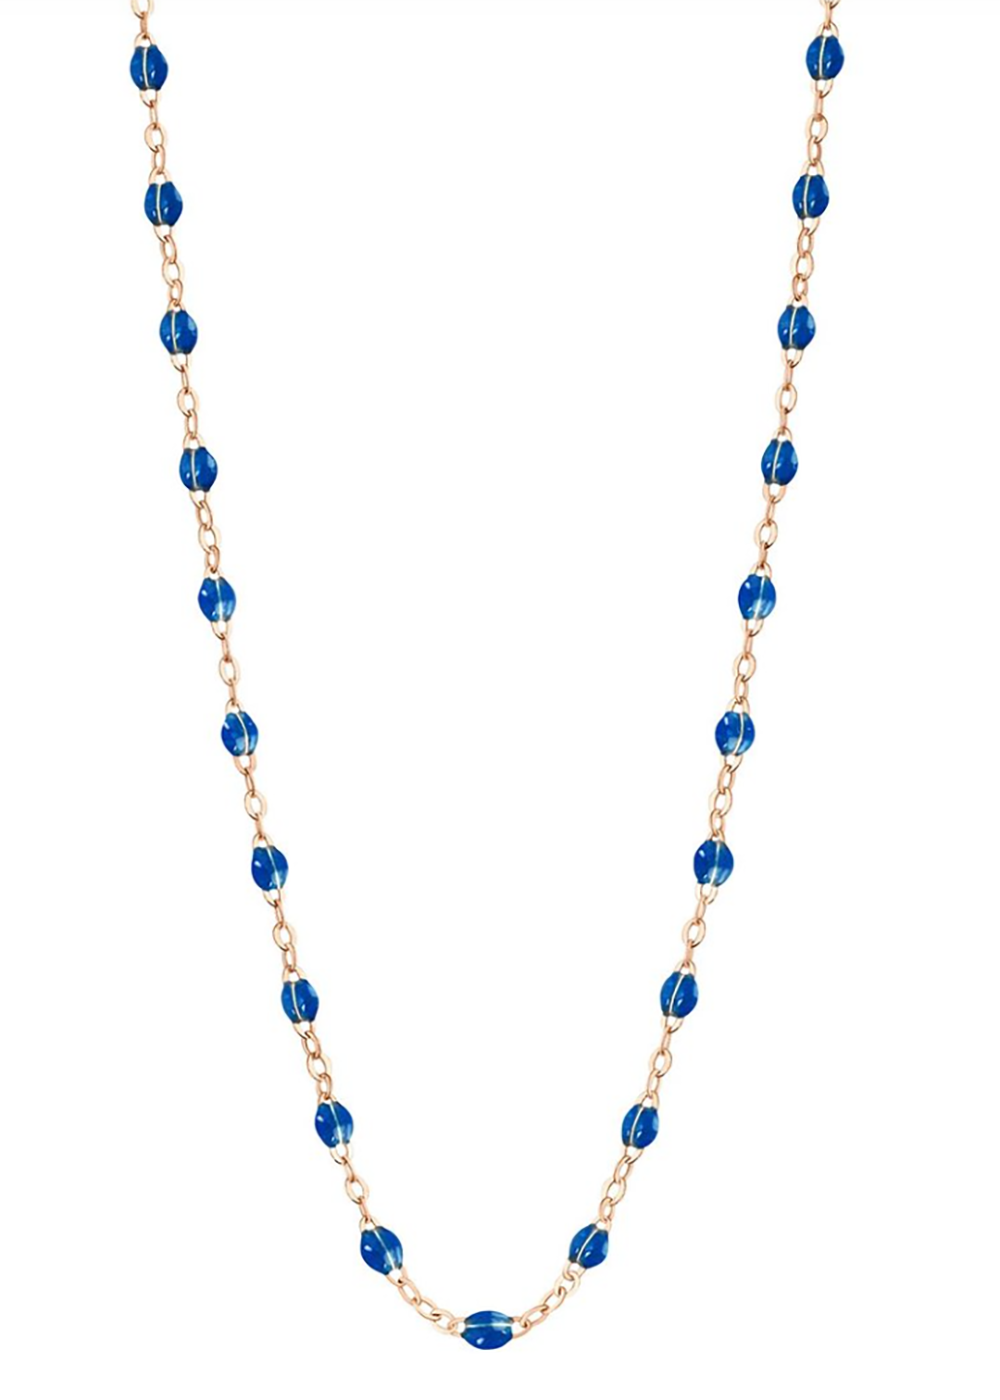 gigiCLOZEAU Jewlery - classic gigi necklace 18k |Saphire|